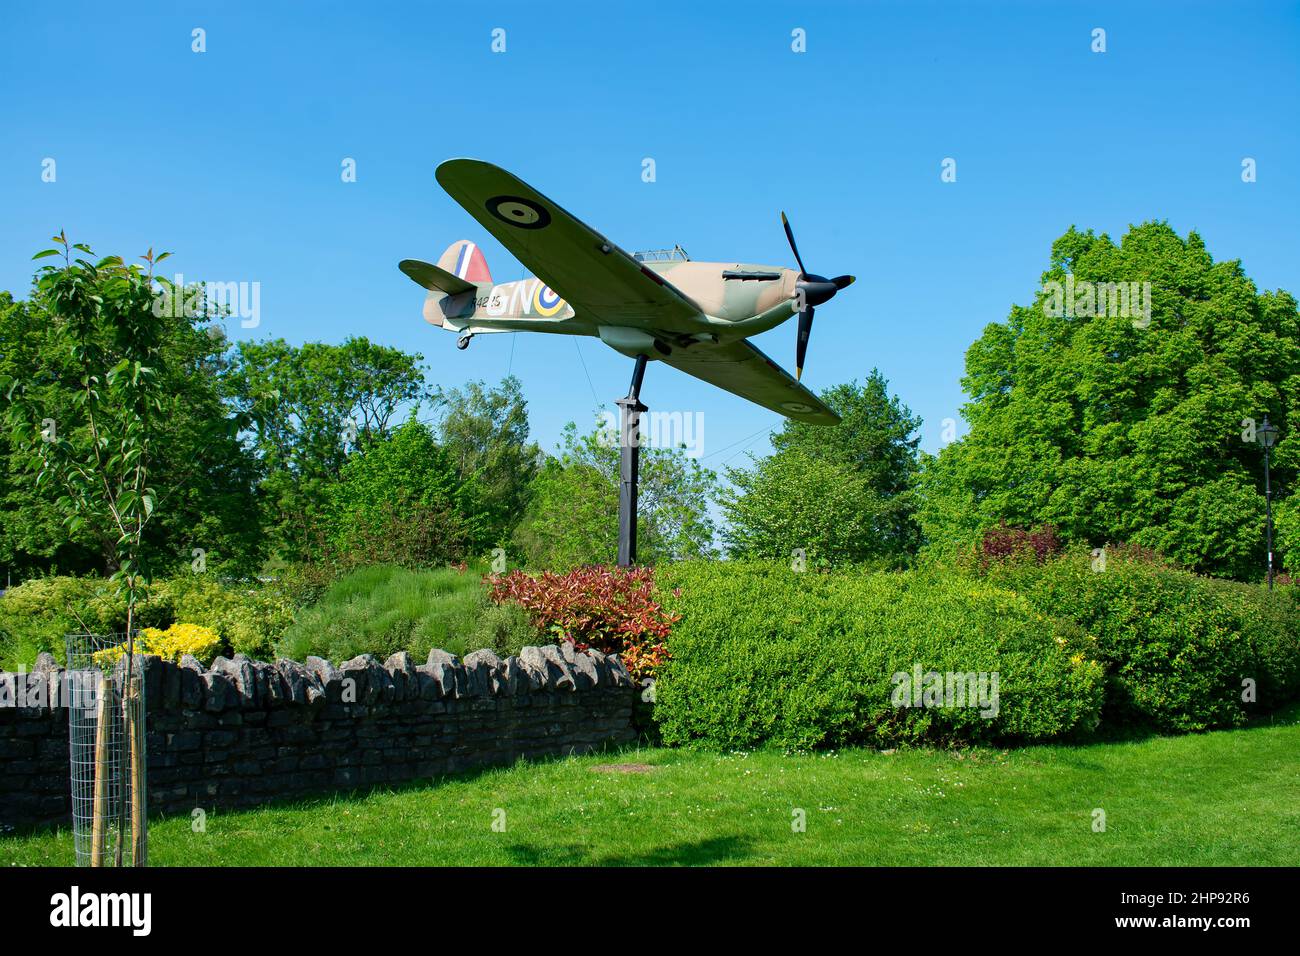 Une réplique pleine grandeur de l'avion-tempête Hawker de la Seconde Guerre mondiale près d'Alexandra Gardens à Windsor Berkshire, Royaume-Uni. Le mémorial est entouré d'arbres Banque D'Images